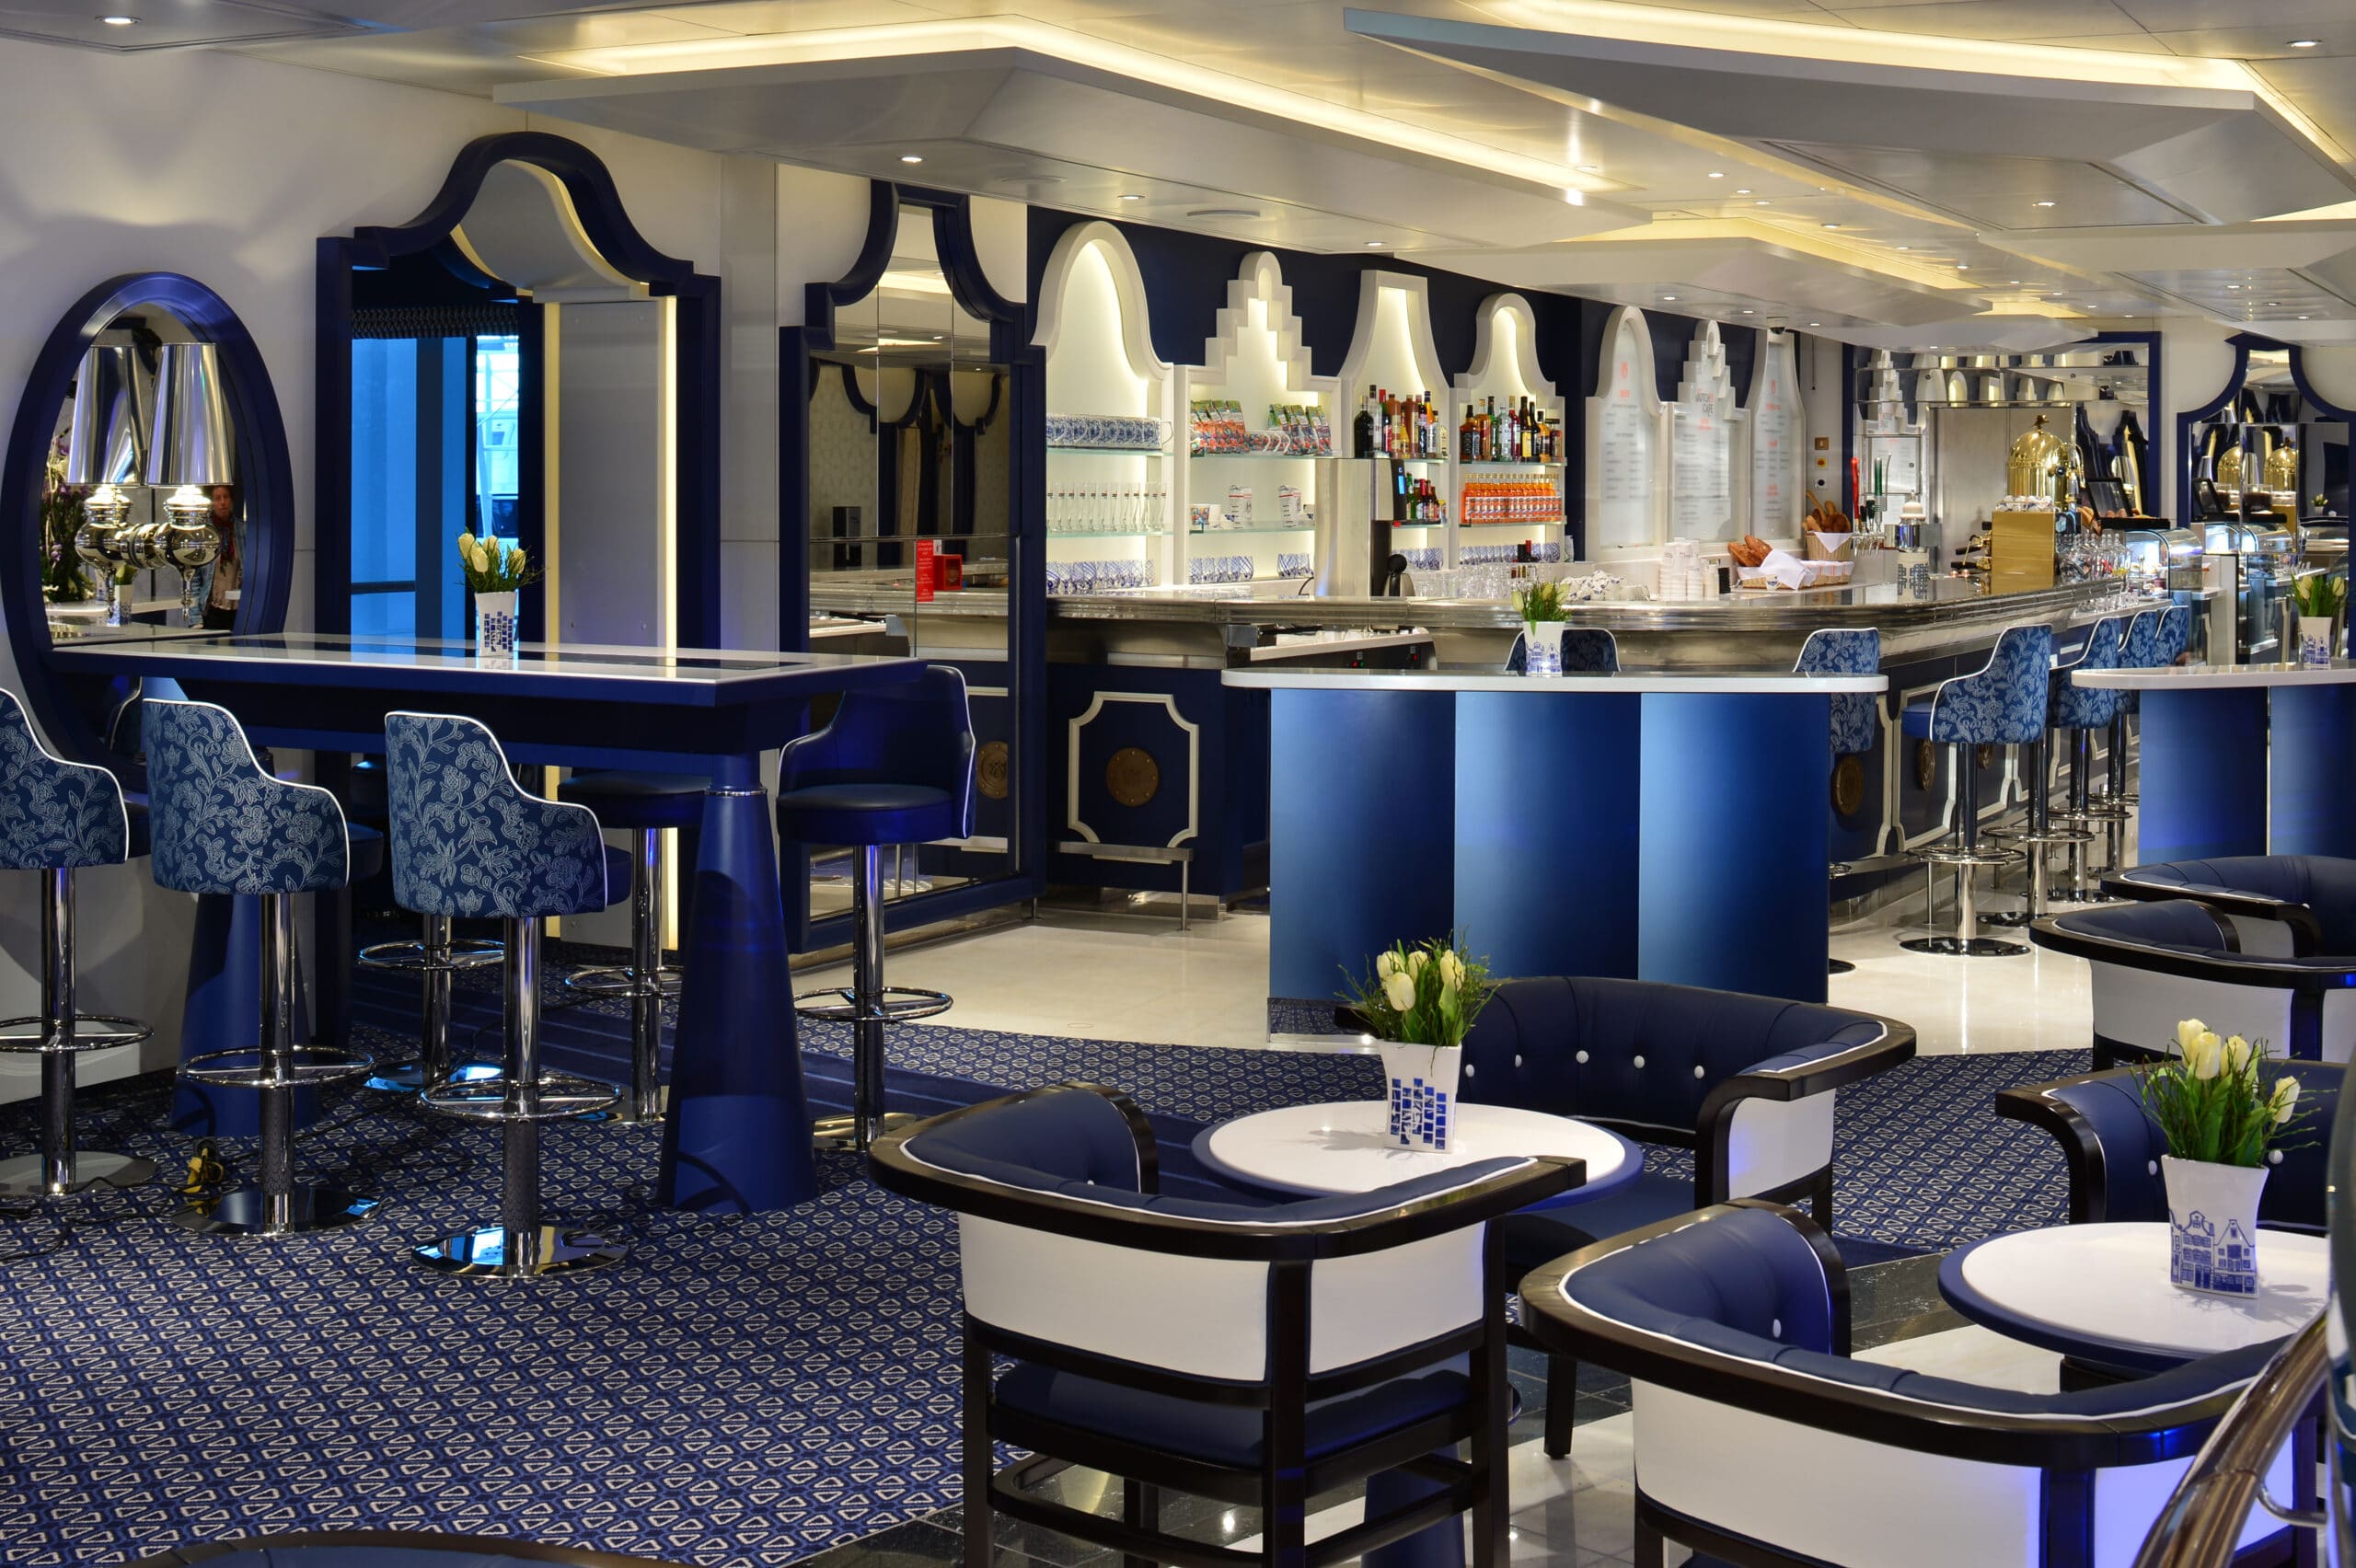 cruiseschip - Holland America Line - Koningsdam - Grand Dutch Cafe